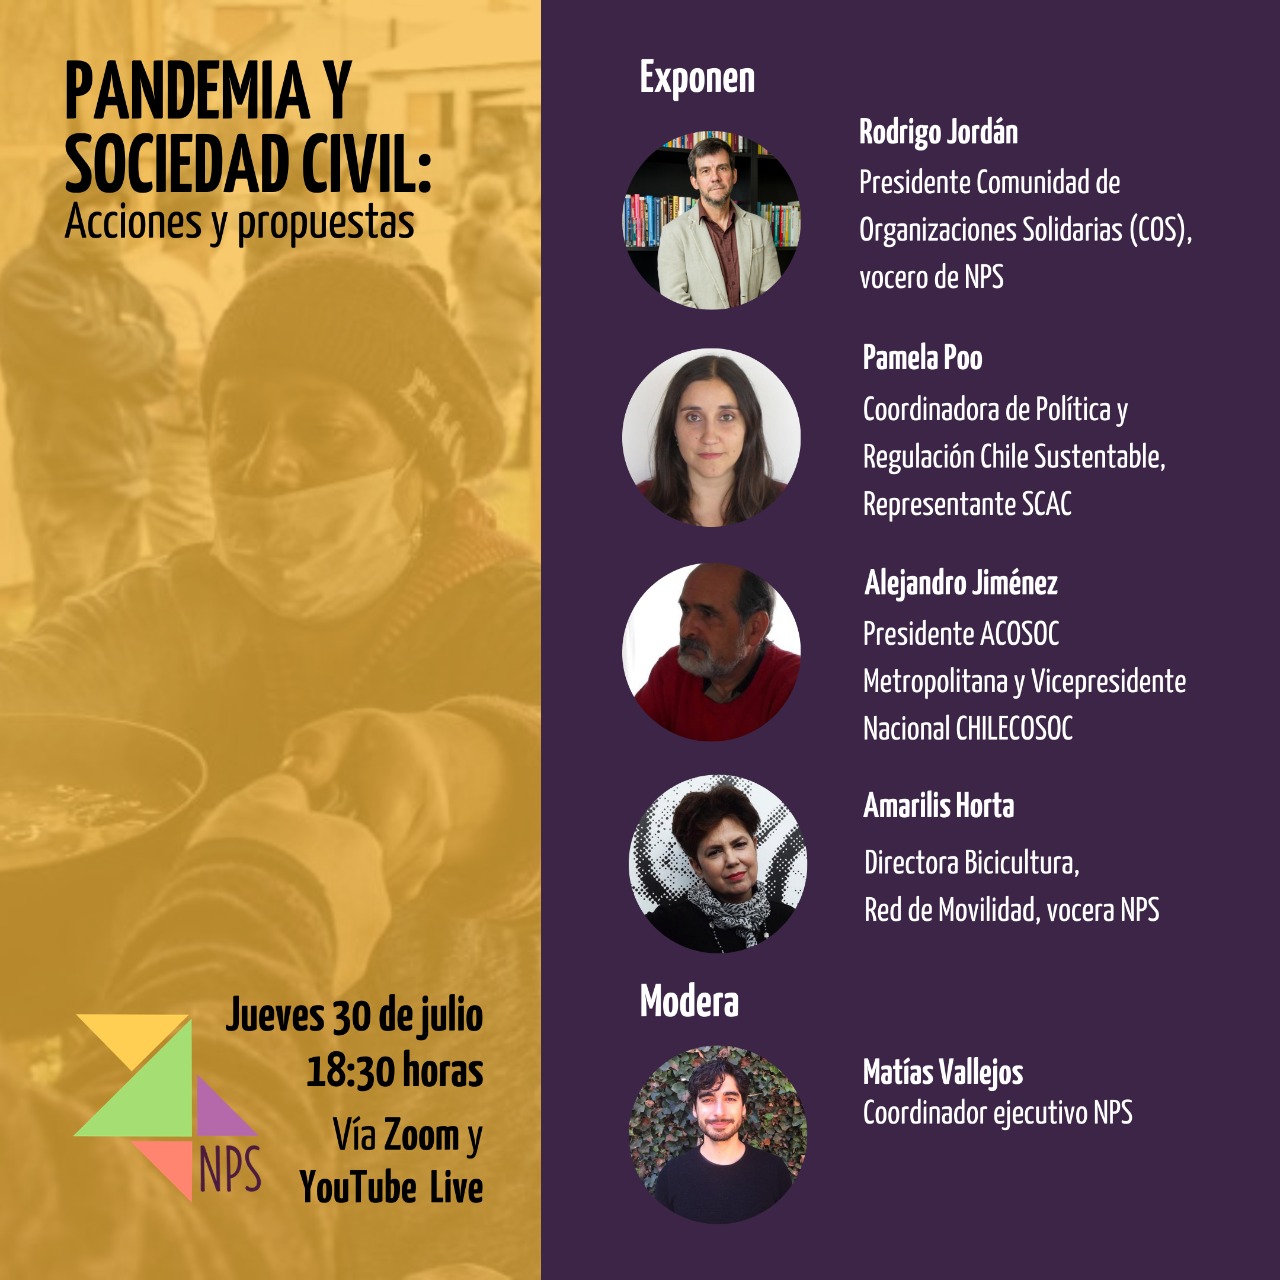 Webinar Nuevo Pacto Social: “Pandemia y Sociedad Civil: acciones y propuestas”